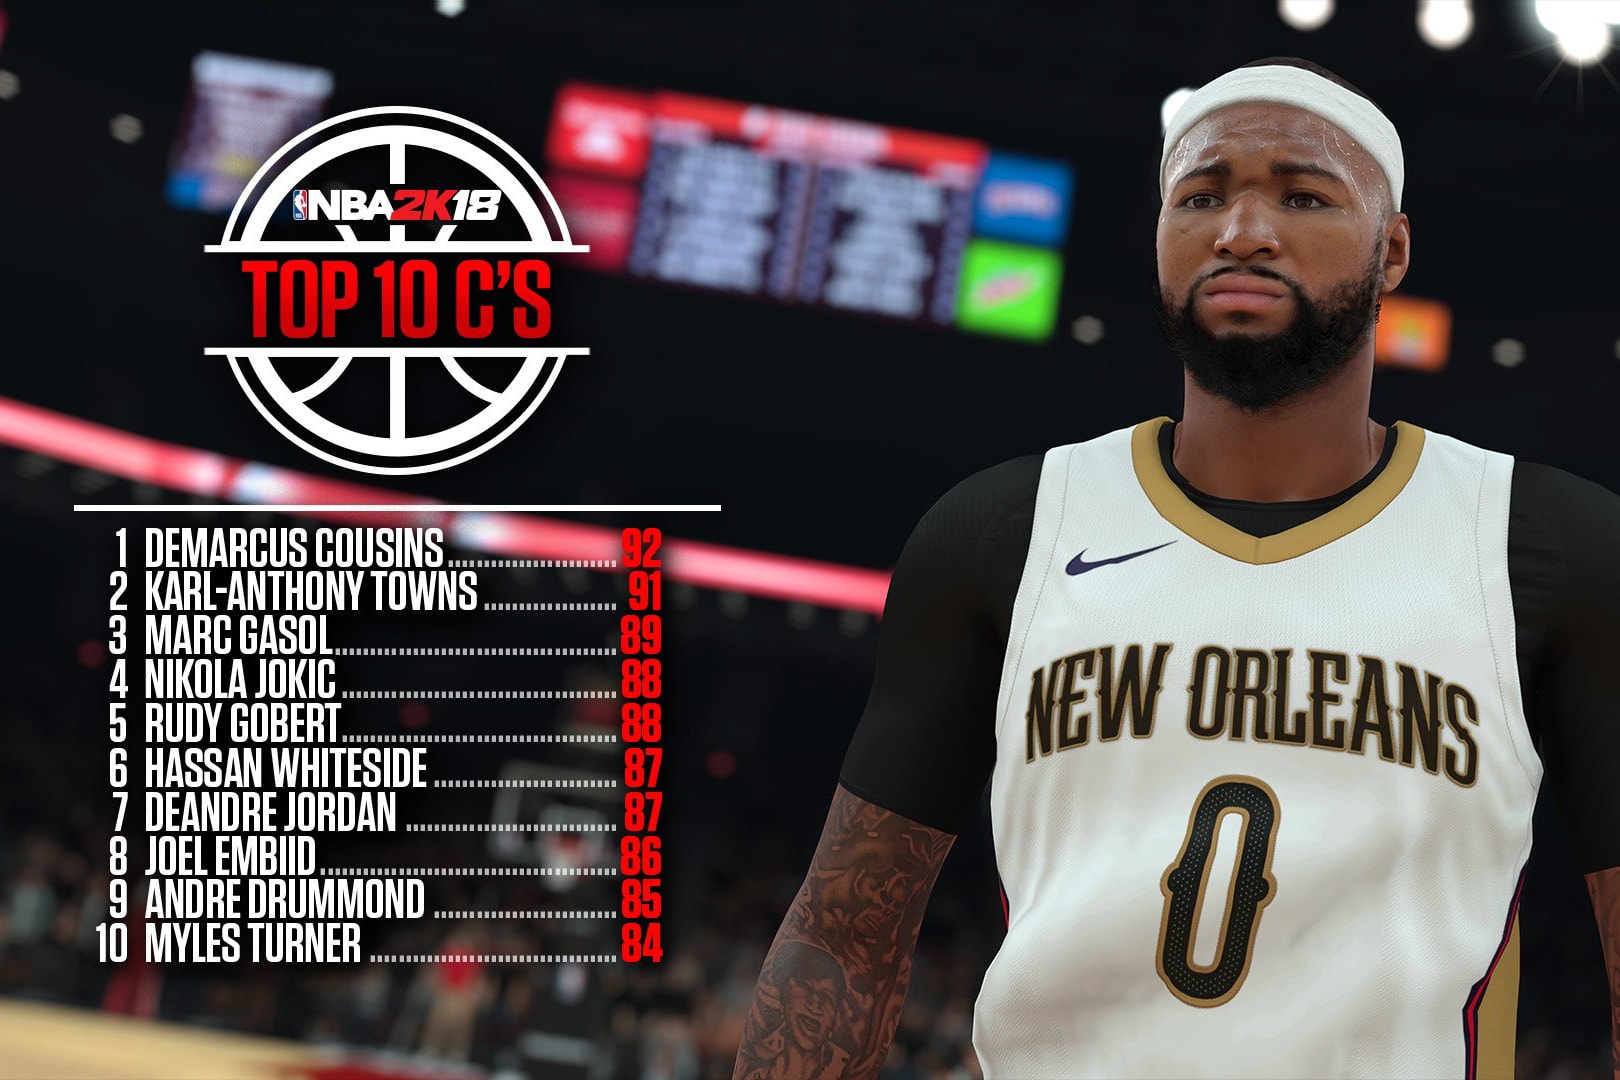 《NBA 2K18》五大位置 Top 10 球員及聯盟十大球星能力值排行揭曉